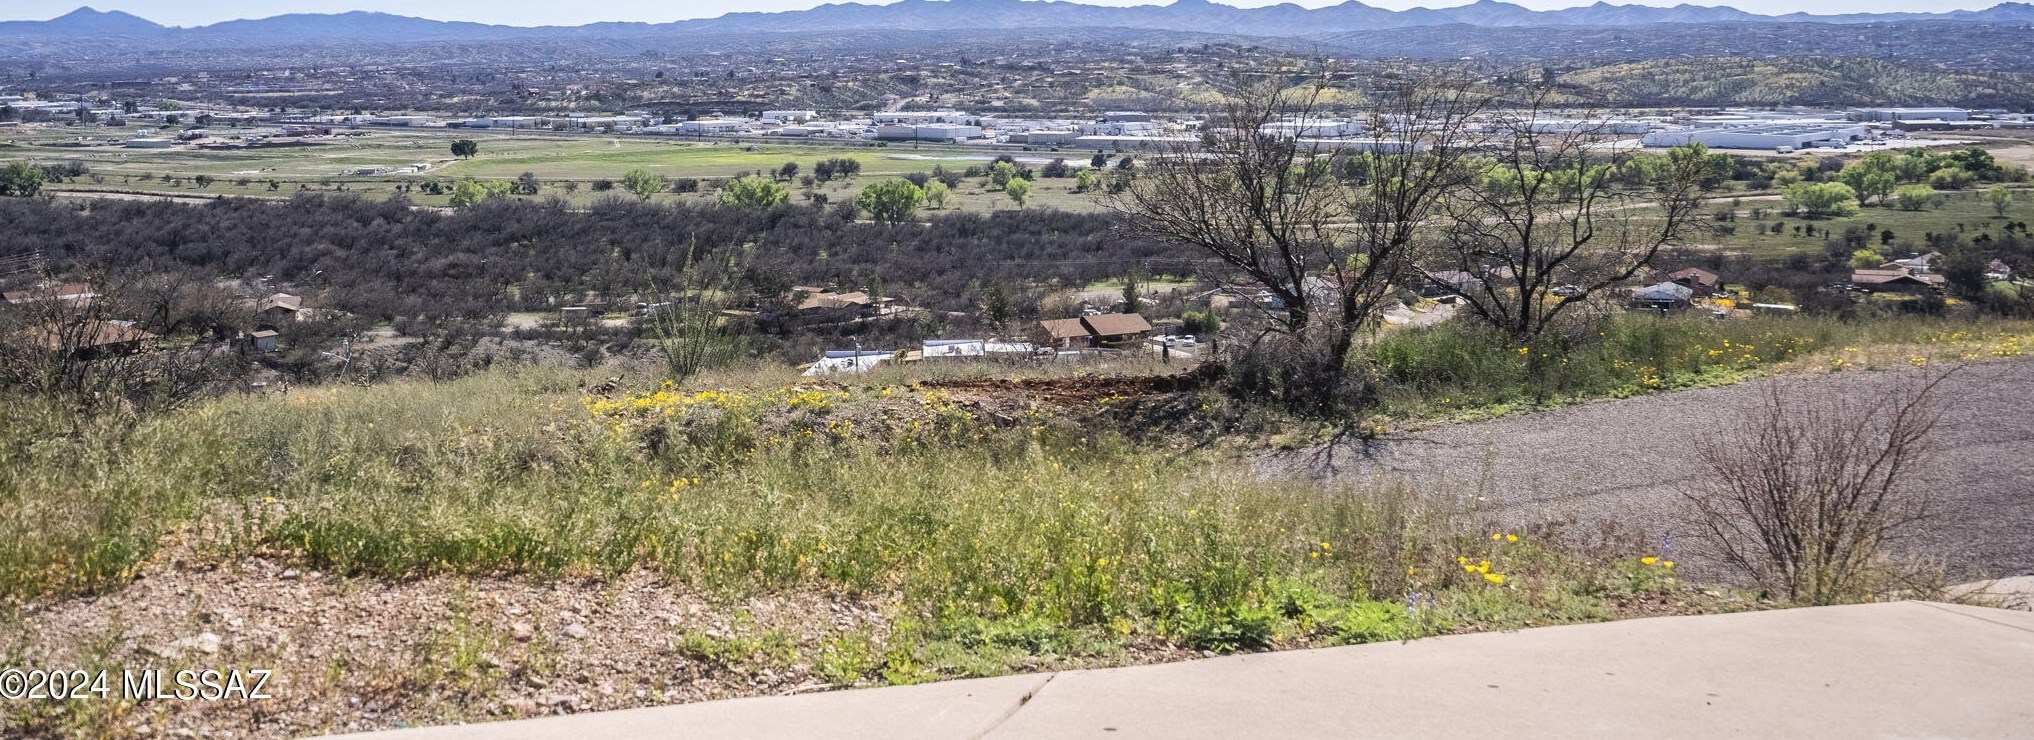 56 Camino Pesqueira, Nogales, AZ 85648